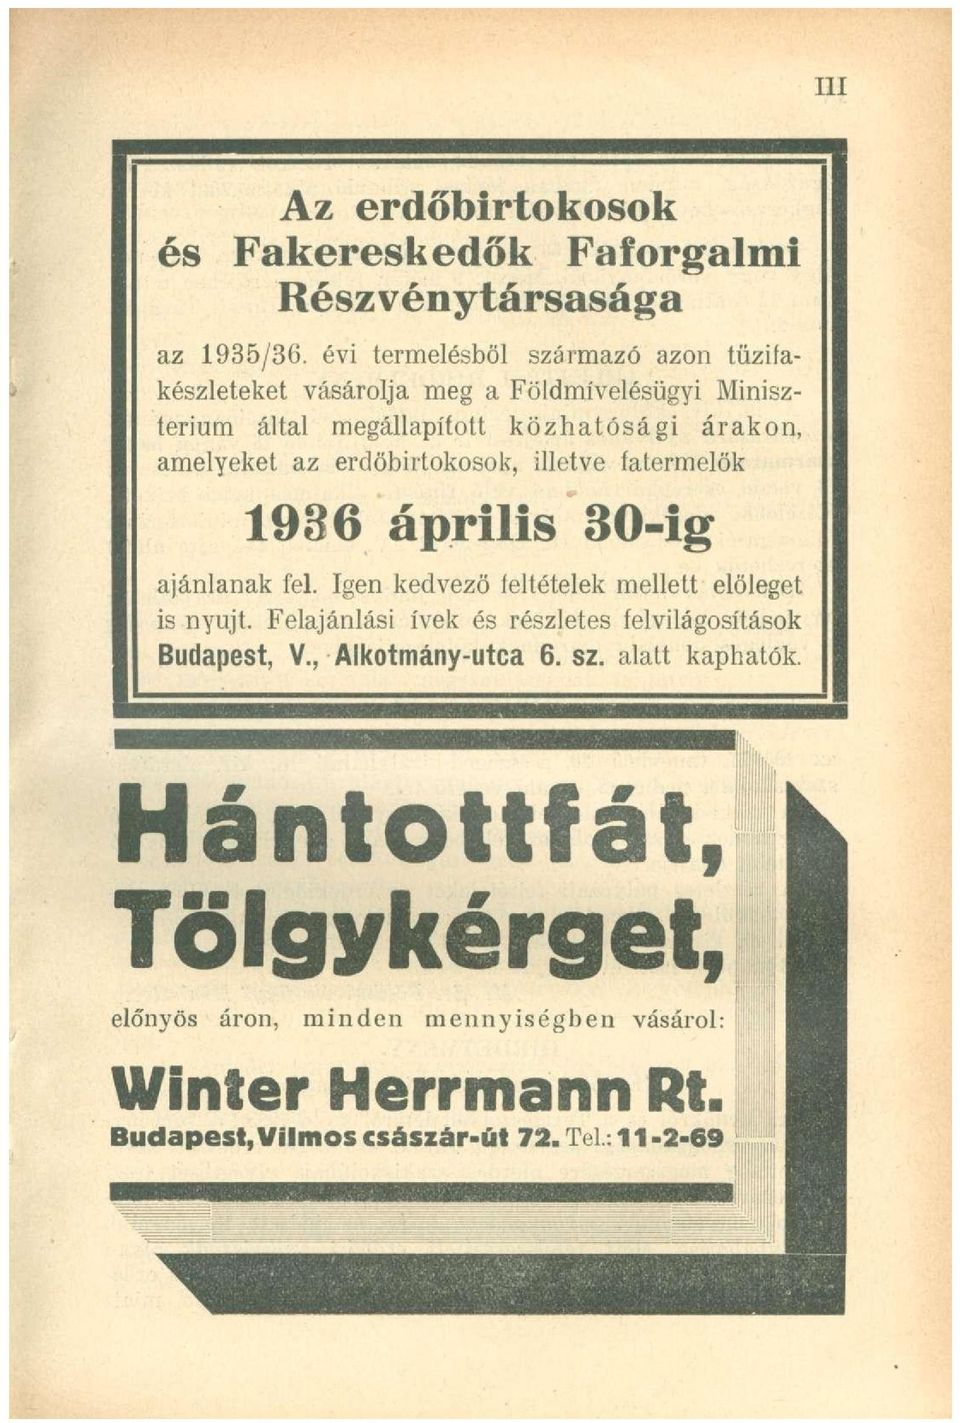 erdőbirtokosok, illetve fatermelök 1936 április 30-ig ajánlanak fel. Igen kedvező feltételek mellett előleget is nyújt.